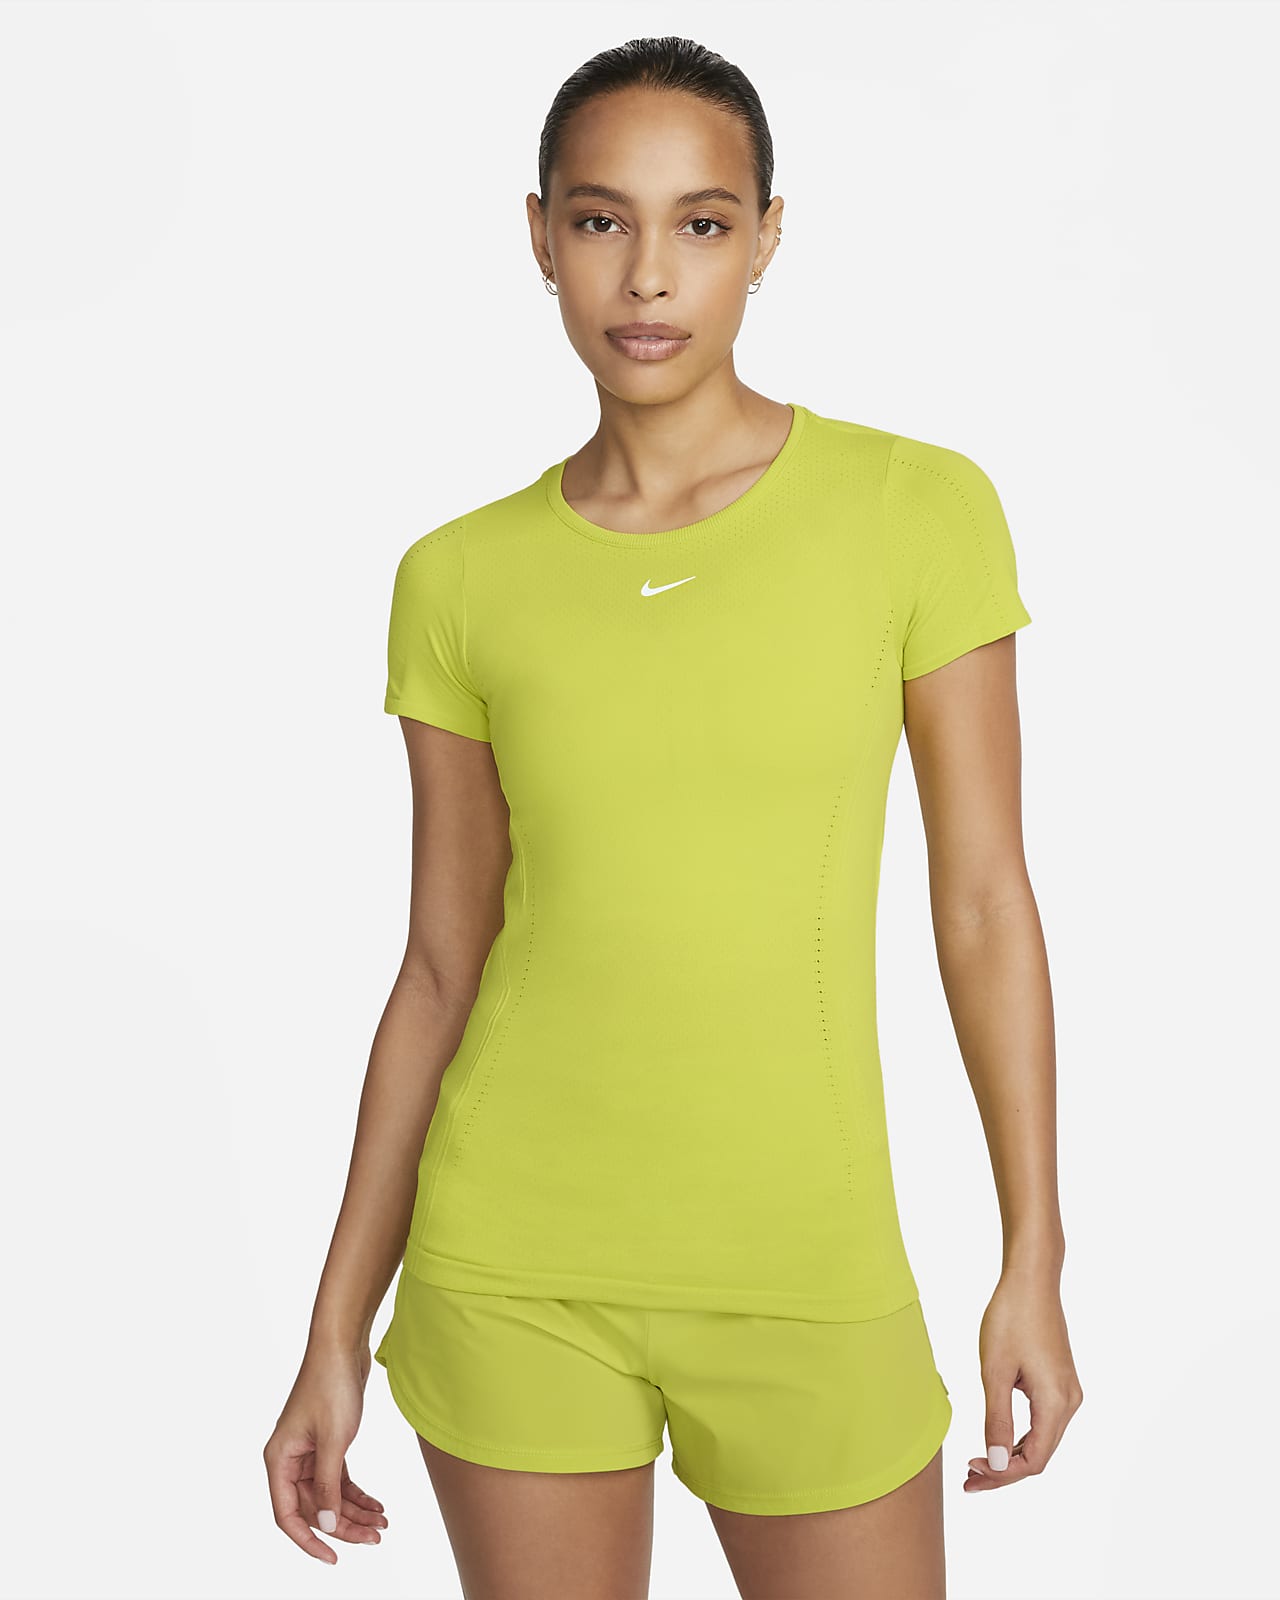 Nike Dri-FIT Aura Women's Slim-Fit Nike.com